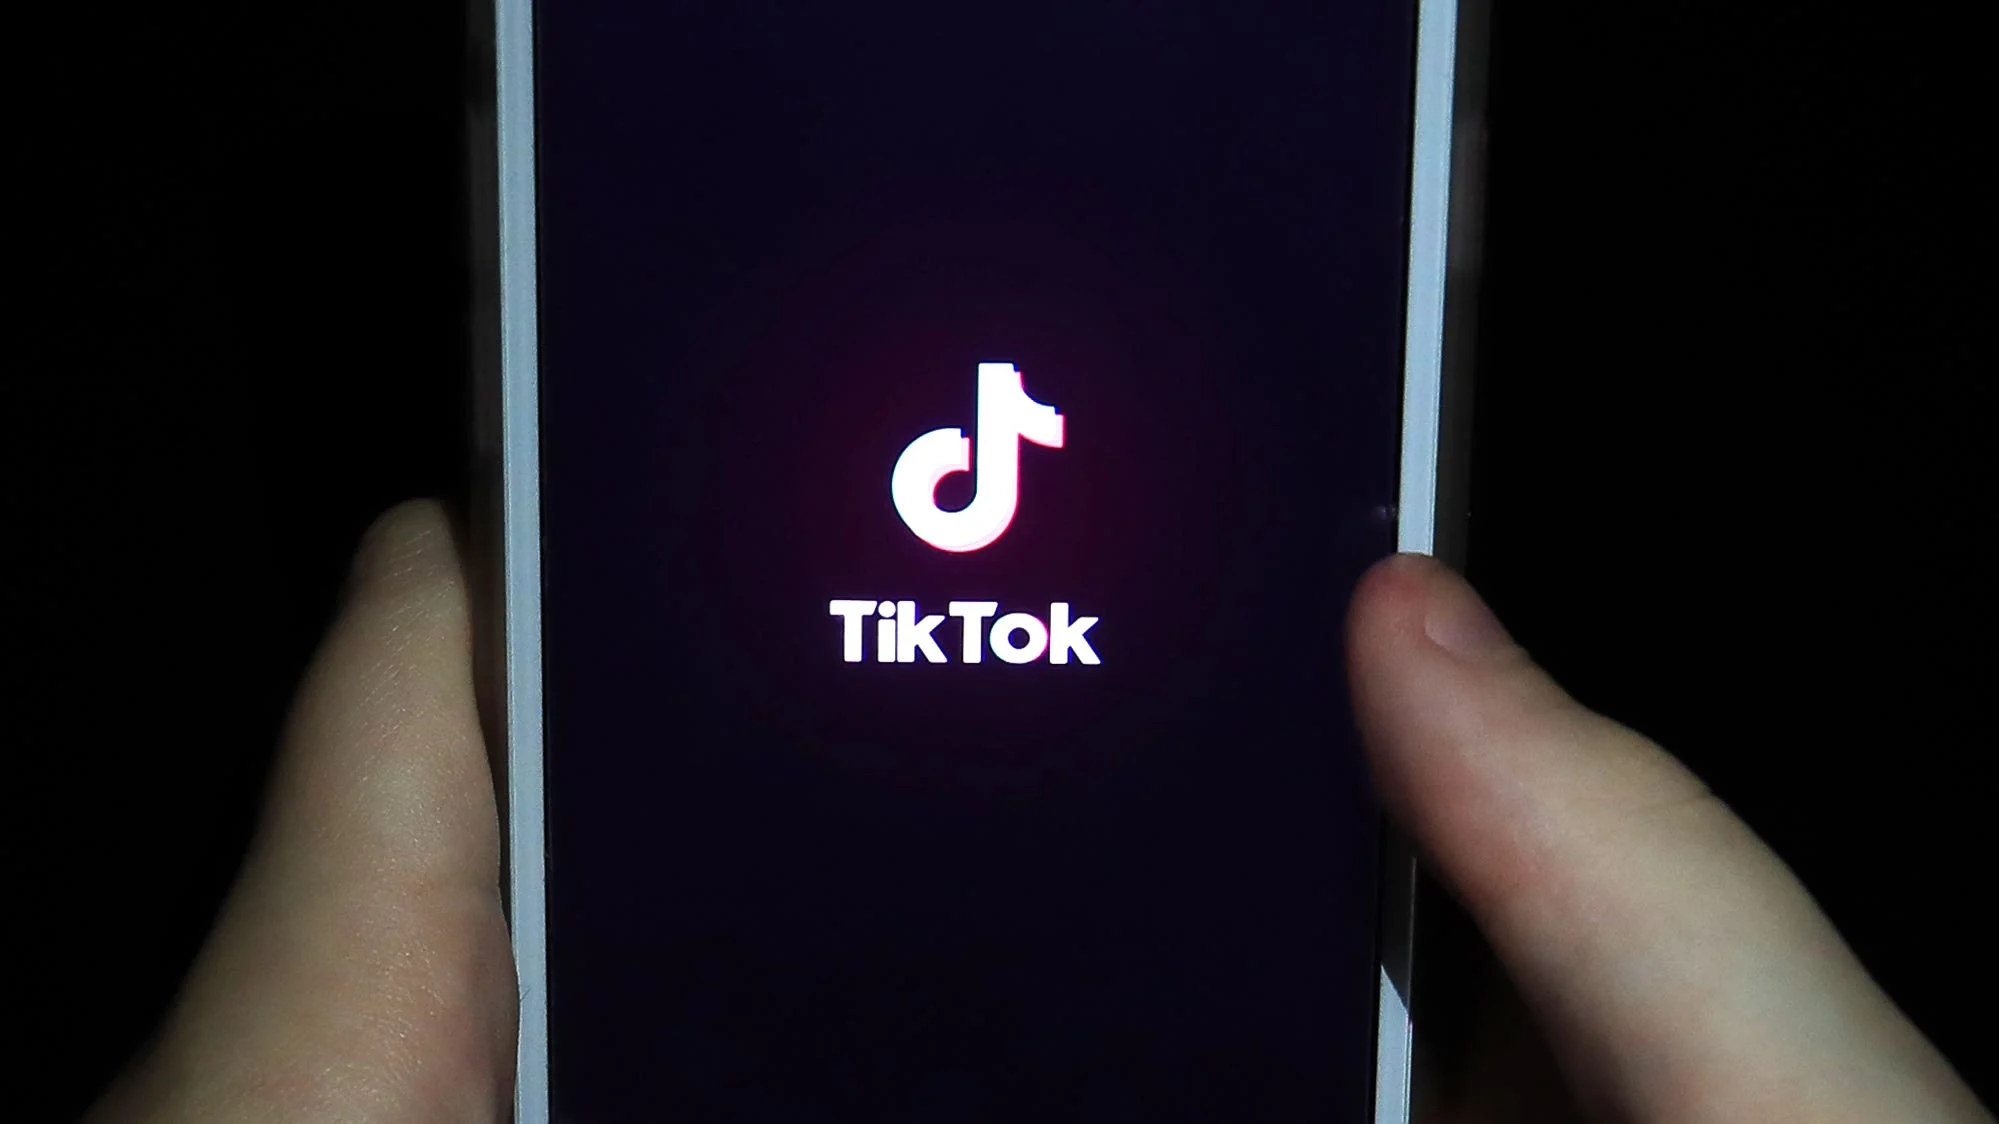 TikTok Launches £1Million Club to Boost UK Retail Market Presence